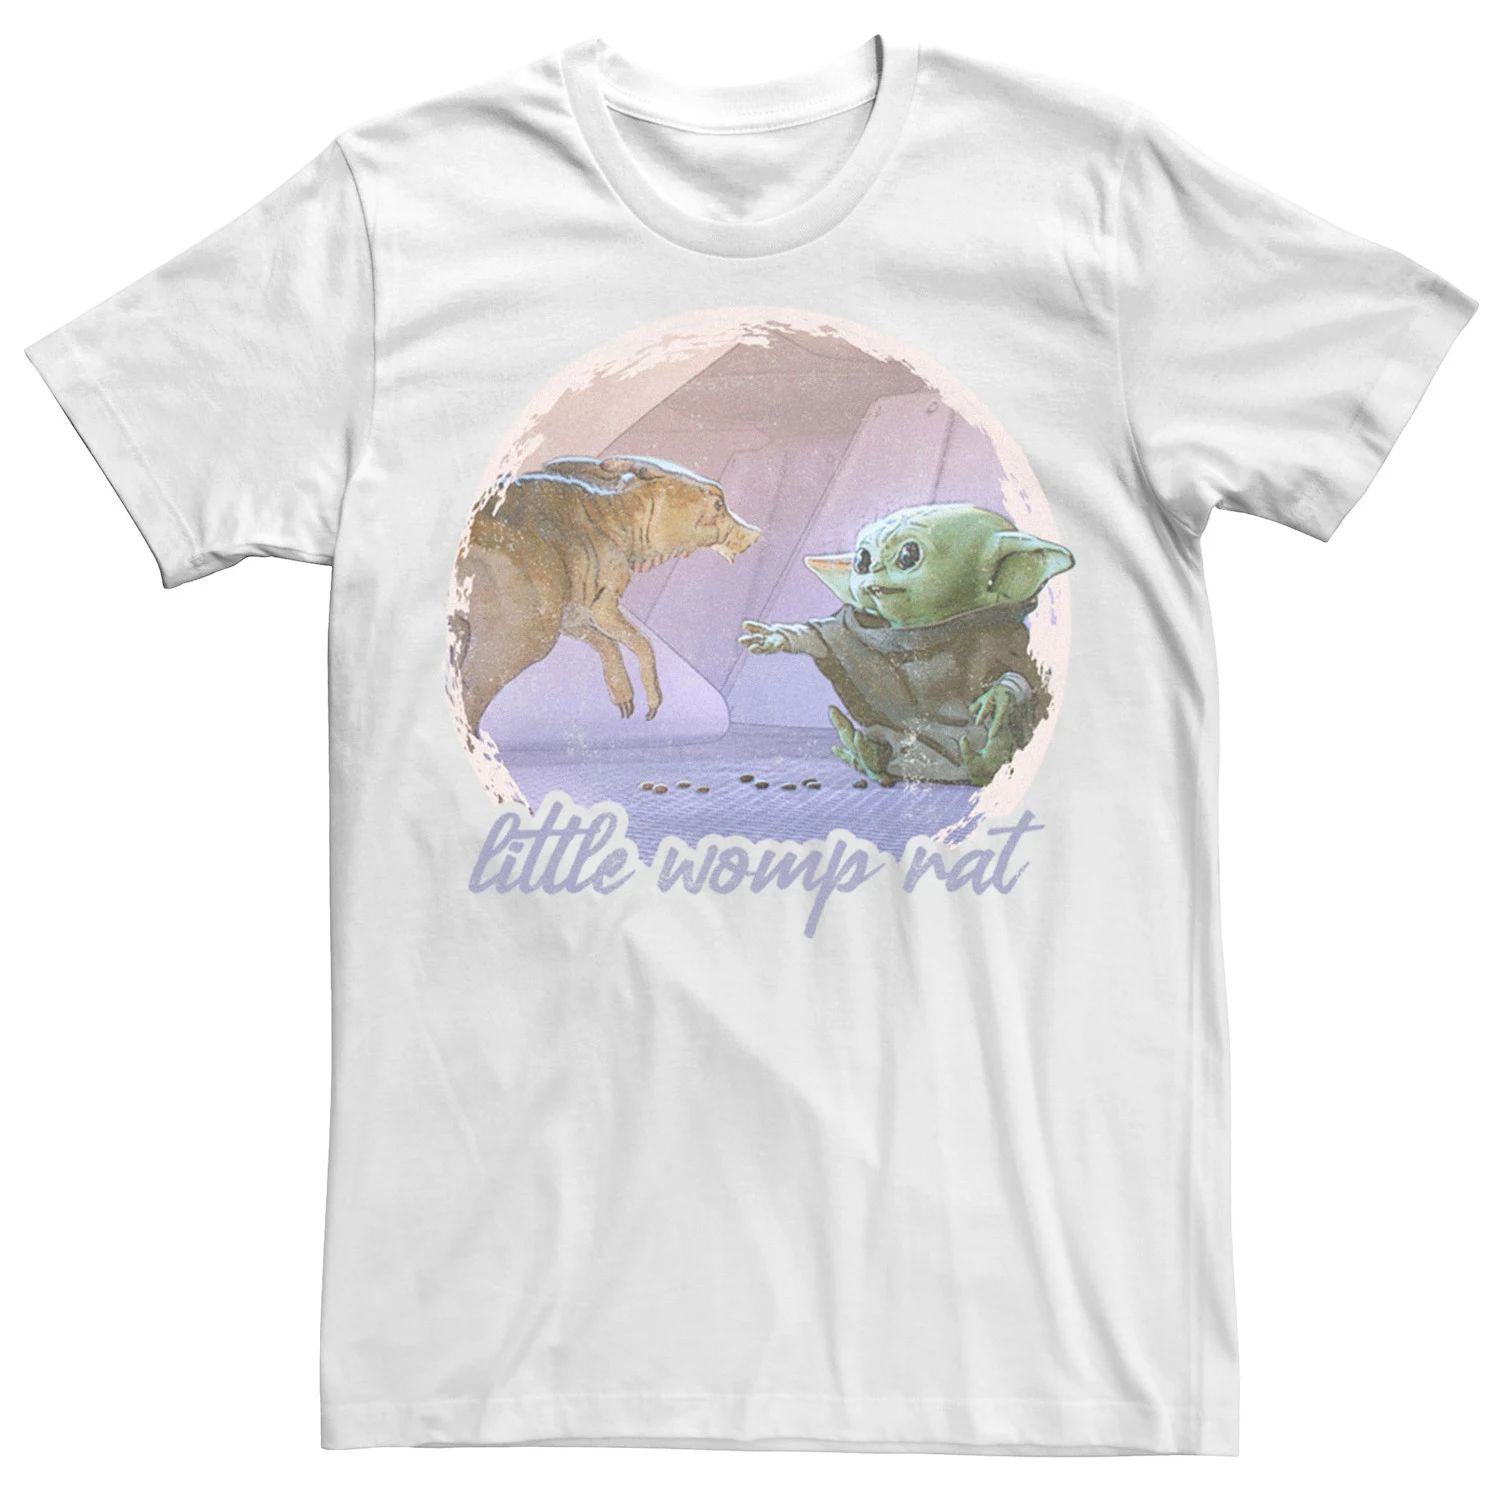 Мужская футболка с концепт-артом «Звездные войны: Мандалорец, Дитя и крыса-крыса» Licensed Character мужская футболка библиотечная крыса умная l черный